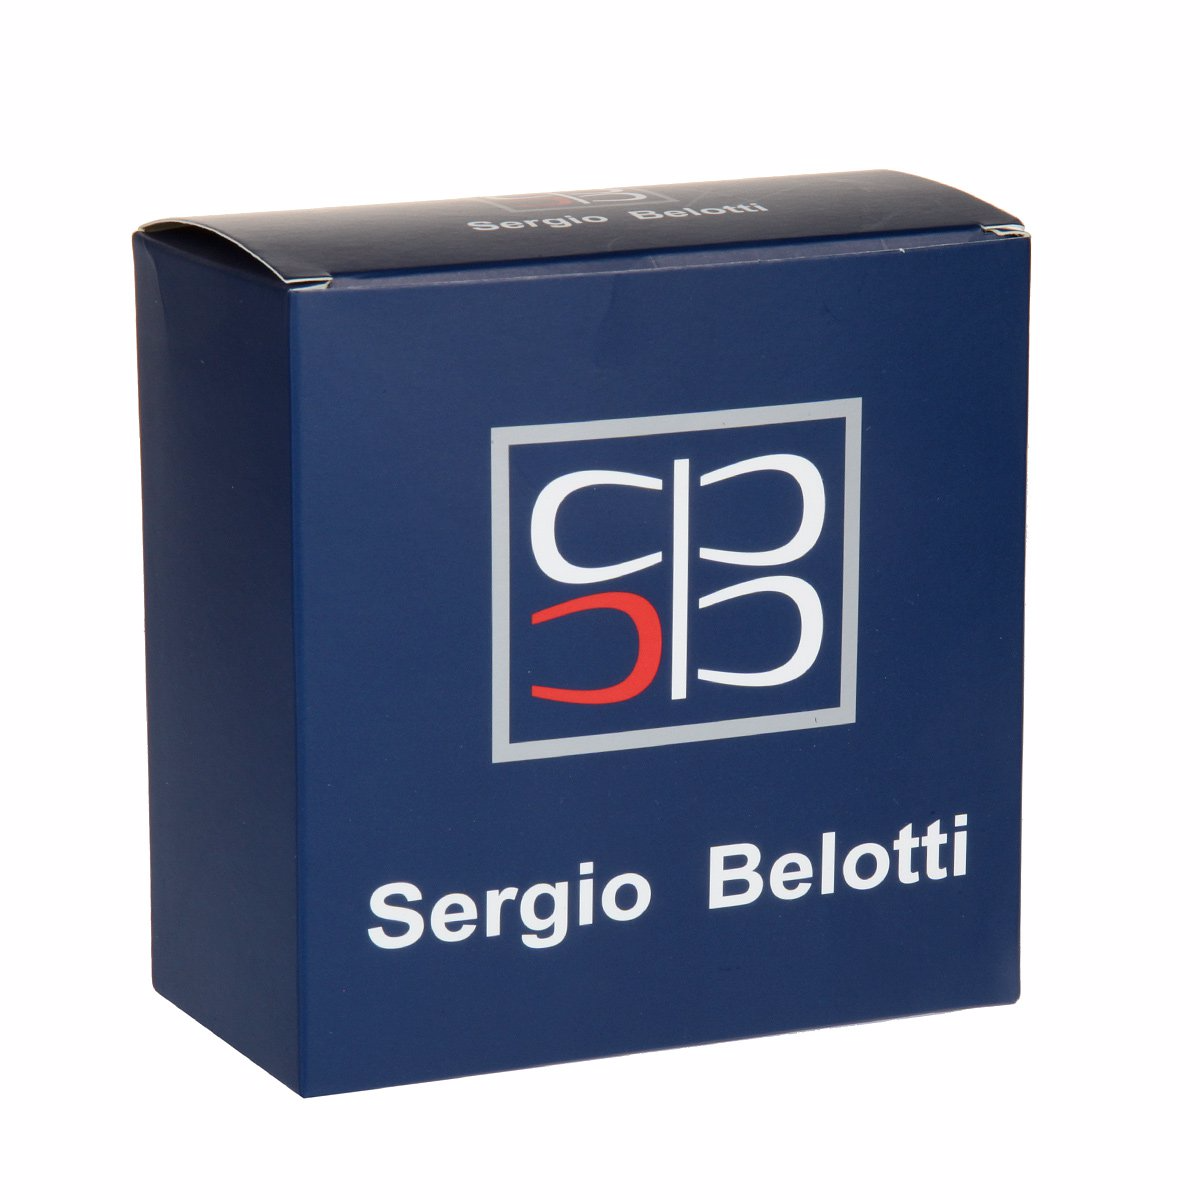 Ремень
Sergio Belotti
7189/40 T/Moro Ремни и пояса